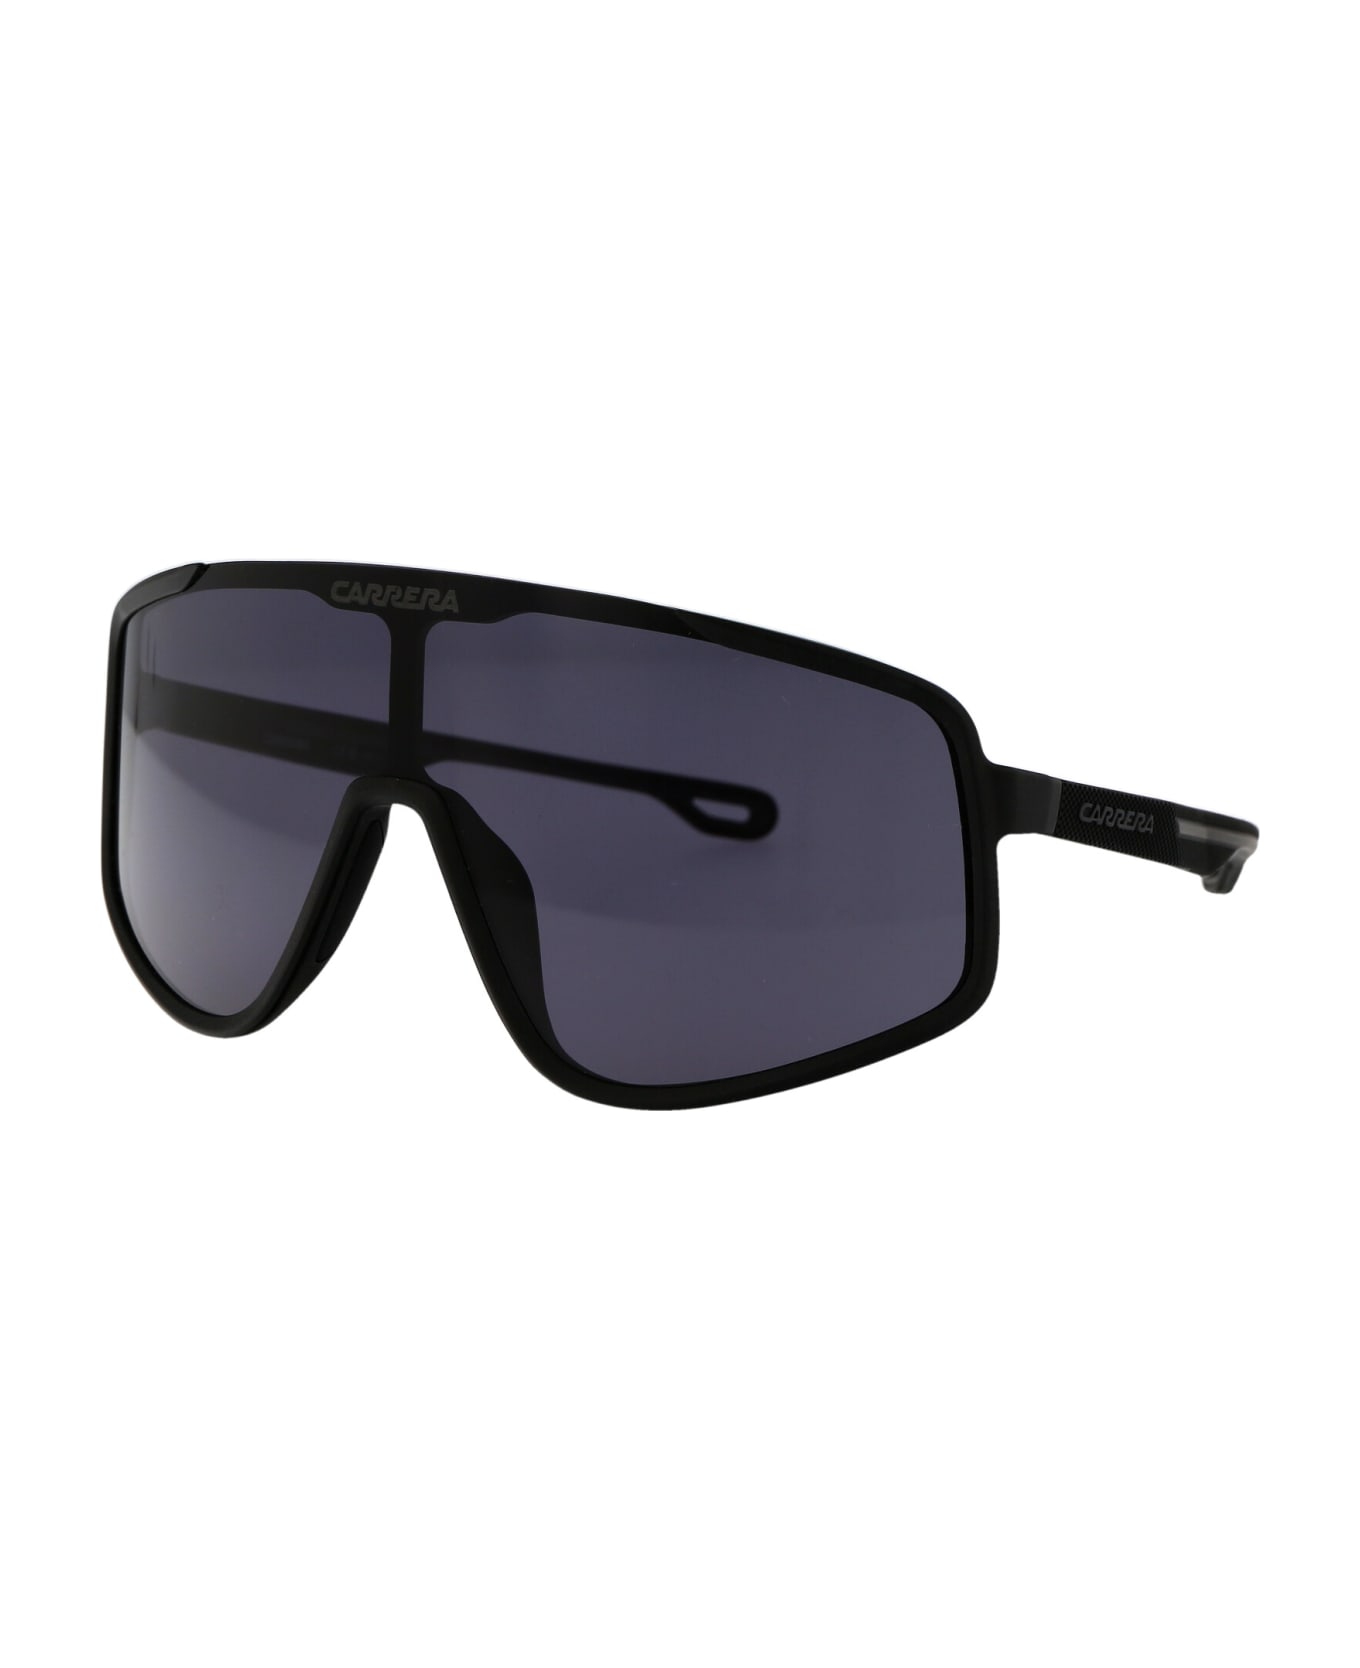 Carrera 4017/s Sunglasses - 003IR MTT BLACK サングラス